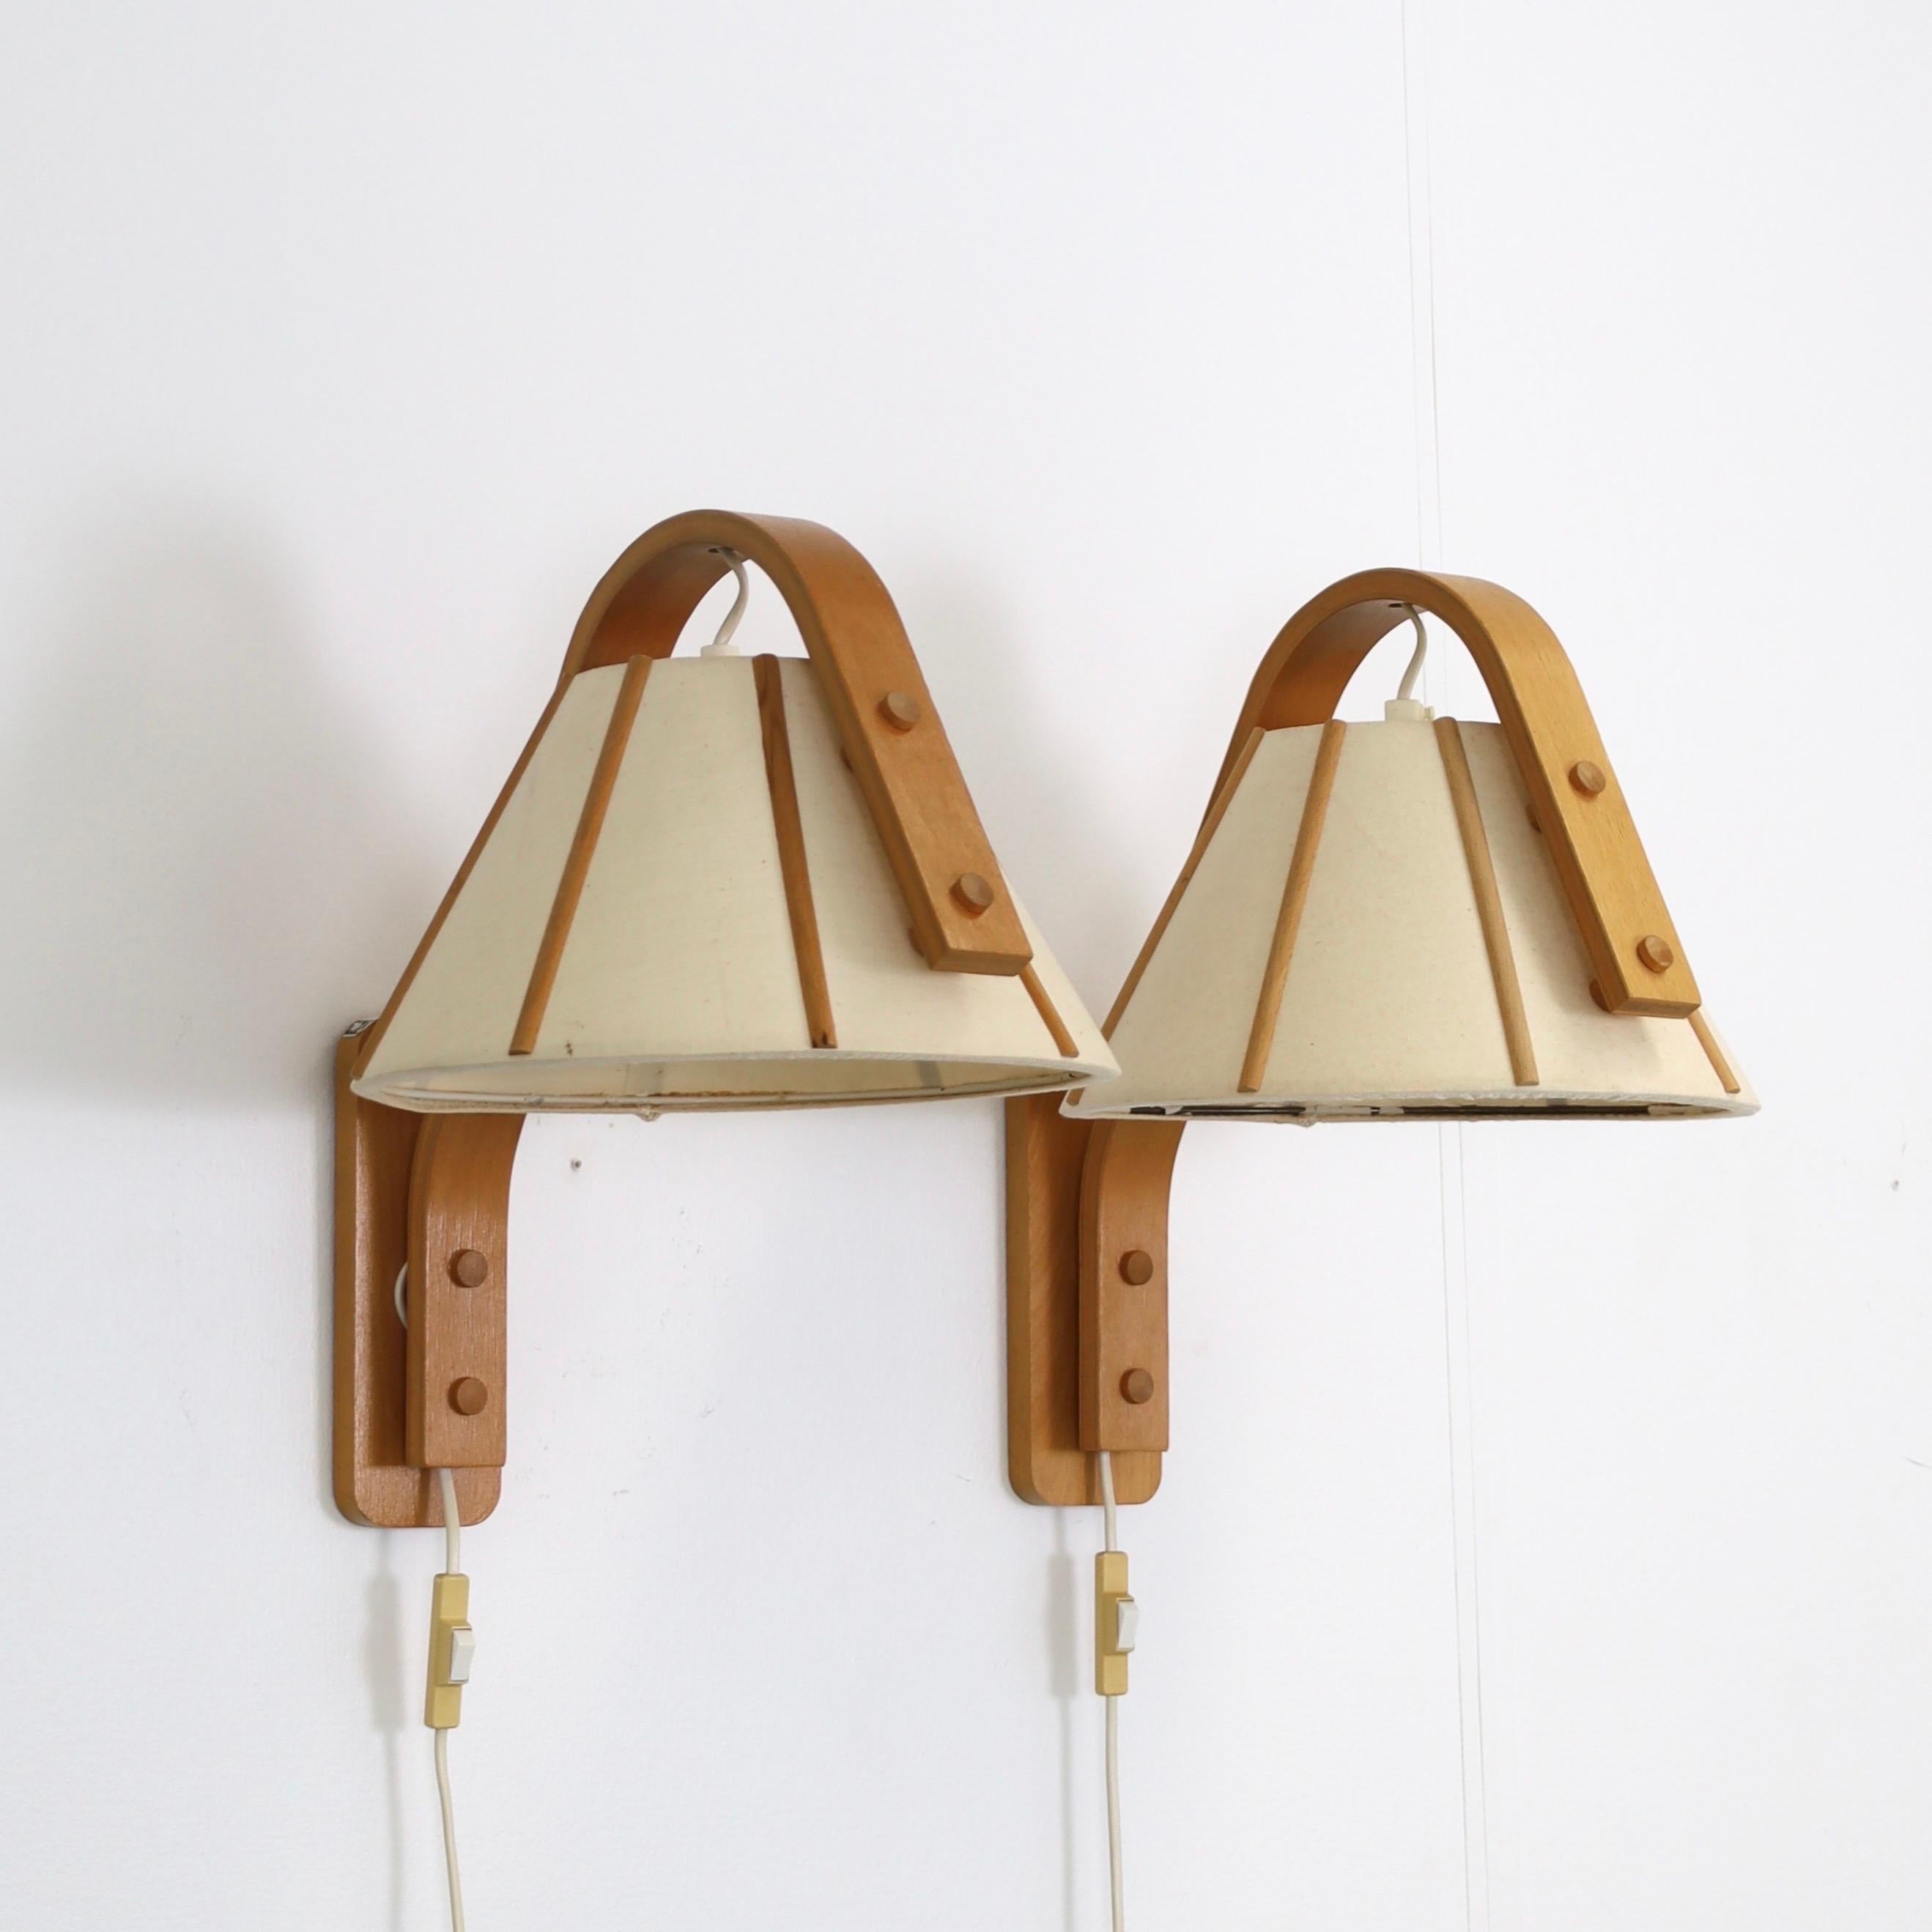 Danish Set of 4 Scandinavian Modern Beech wood wall lamps by Jan Wickelgren, 1970s For Sale